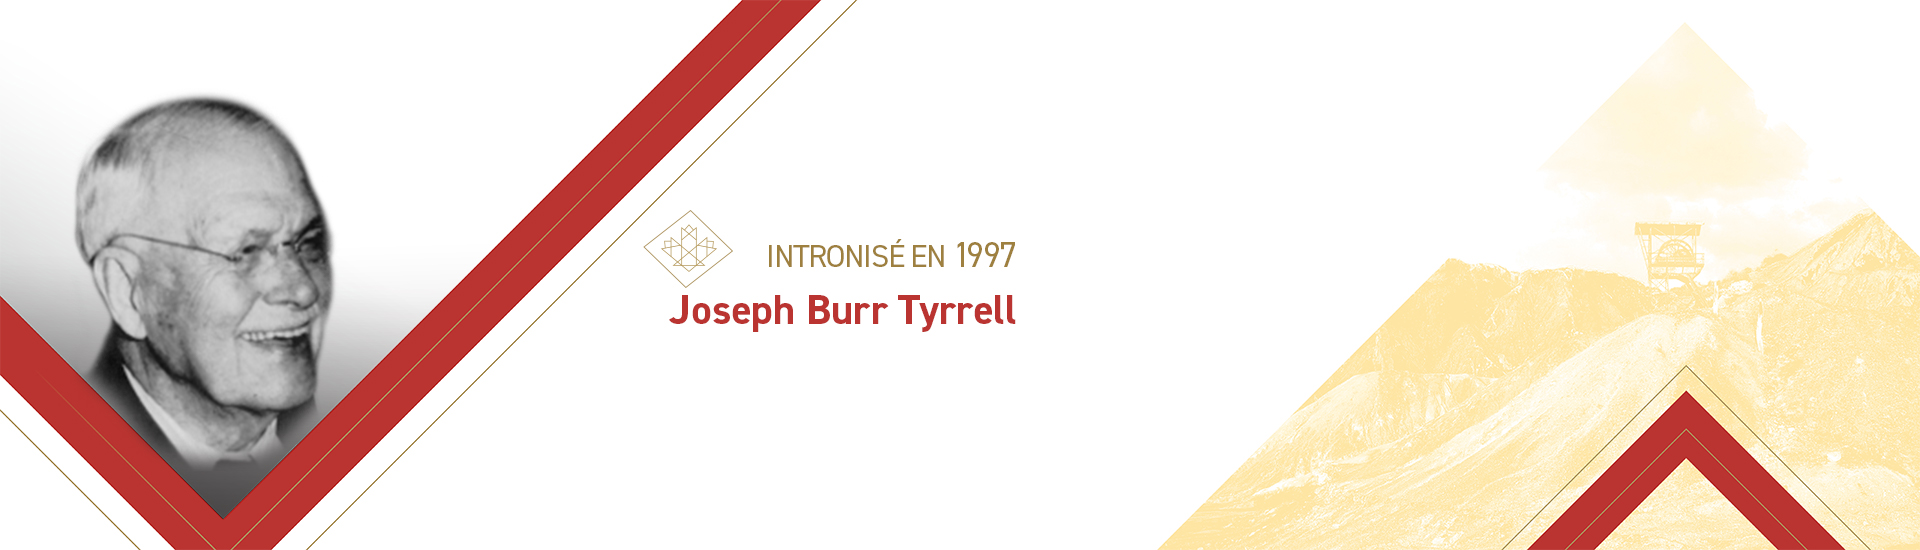 Joseph Burr Tyrrell (1858 – 1957)